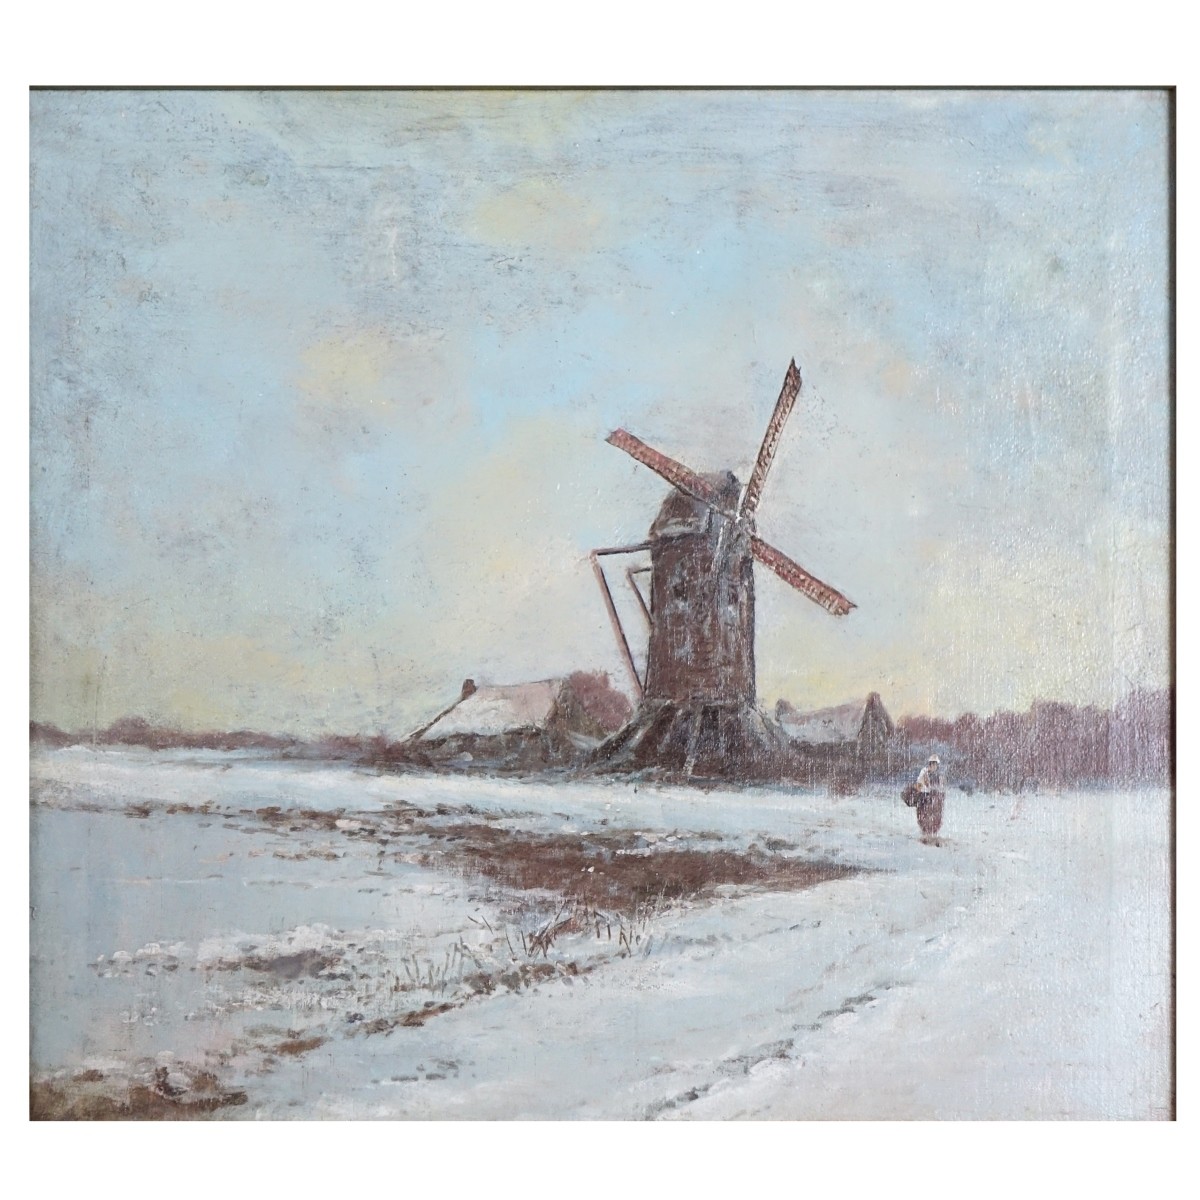 19th C. Dutch School Oil on Canvas